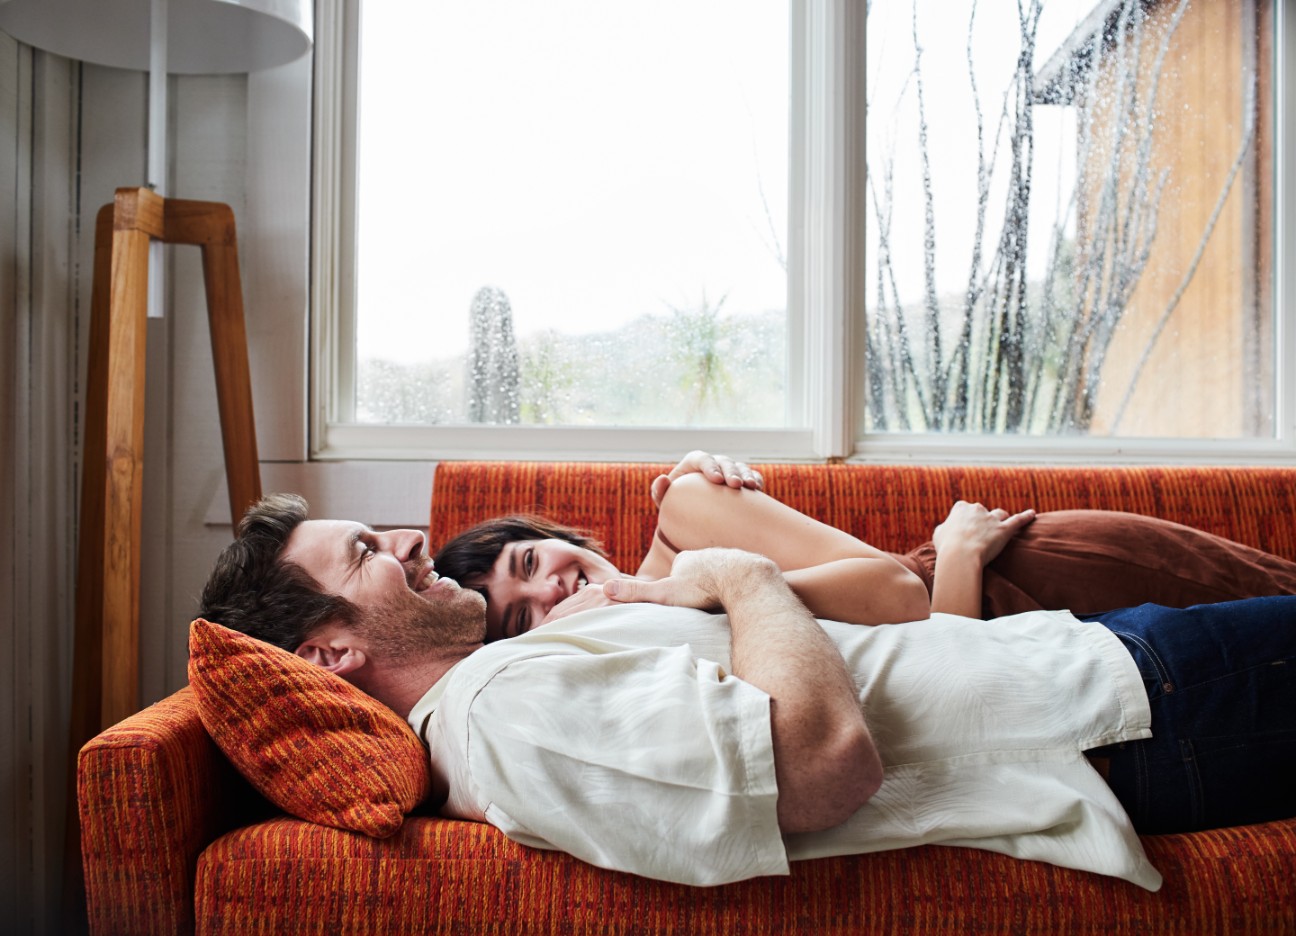 Mann und Frau liegen aneinander gekuschelt auf einem Sofa während es draußen stark regnet